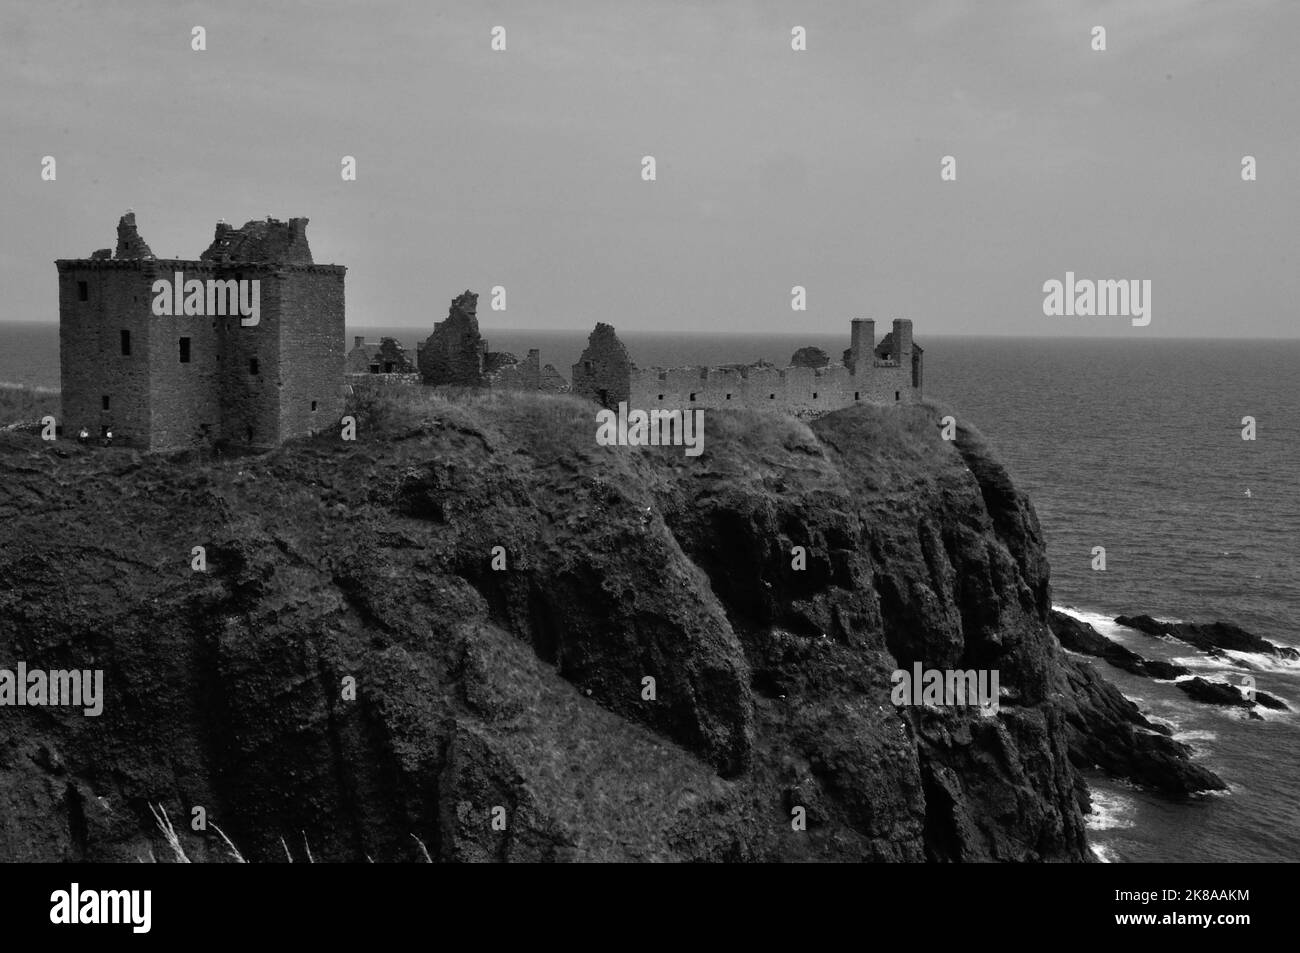 Die Ruine von Dunnottar Castle bei Stonehaven an der schottischen Ostküste liegt nicht nur malerisch direkt am Meer auf schroffen Felsen. You are also Stockfoto